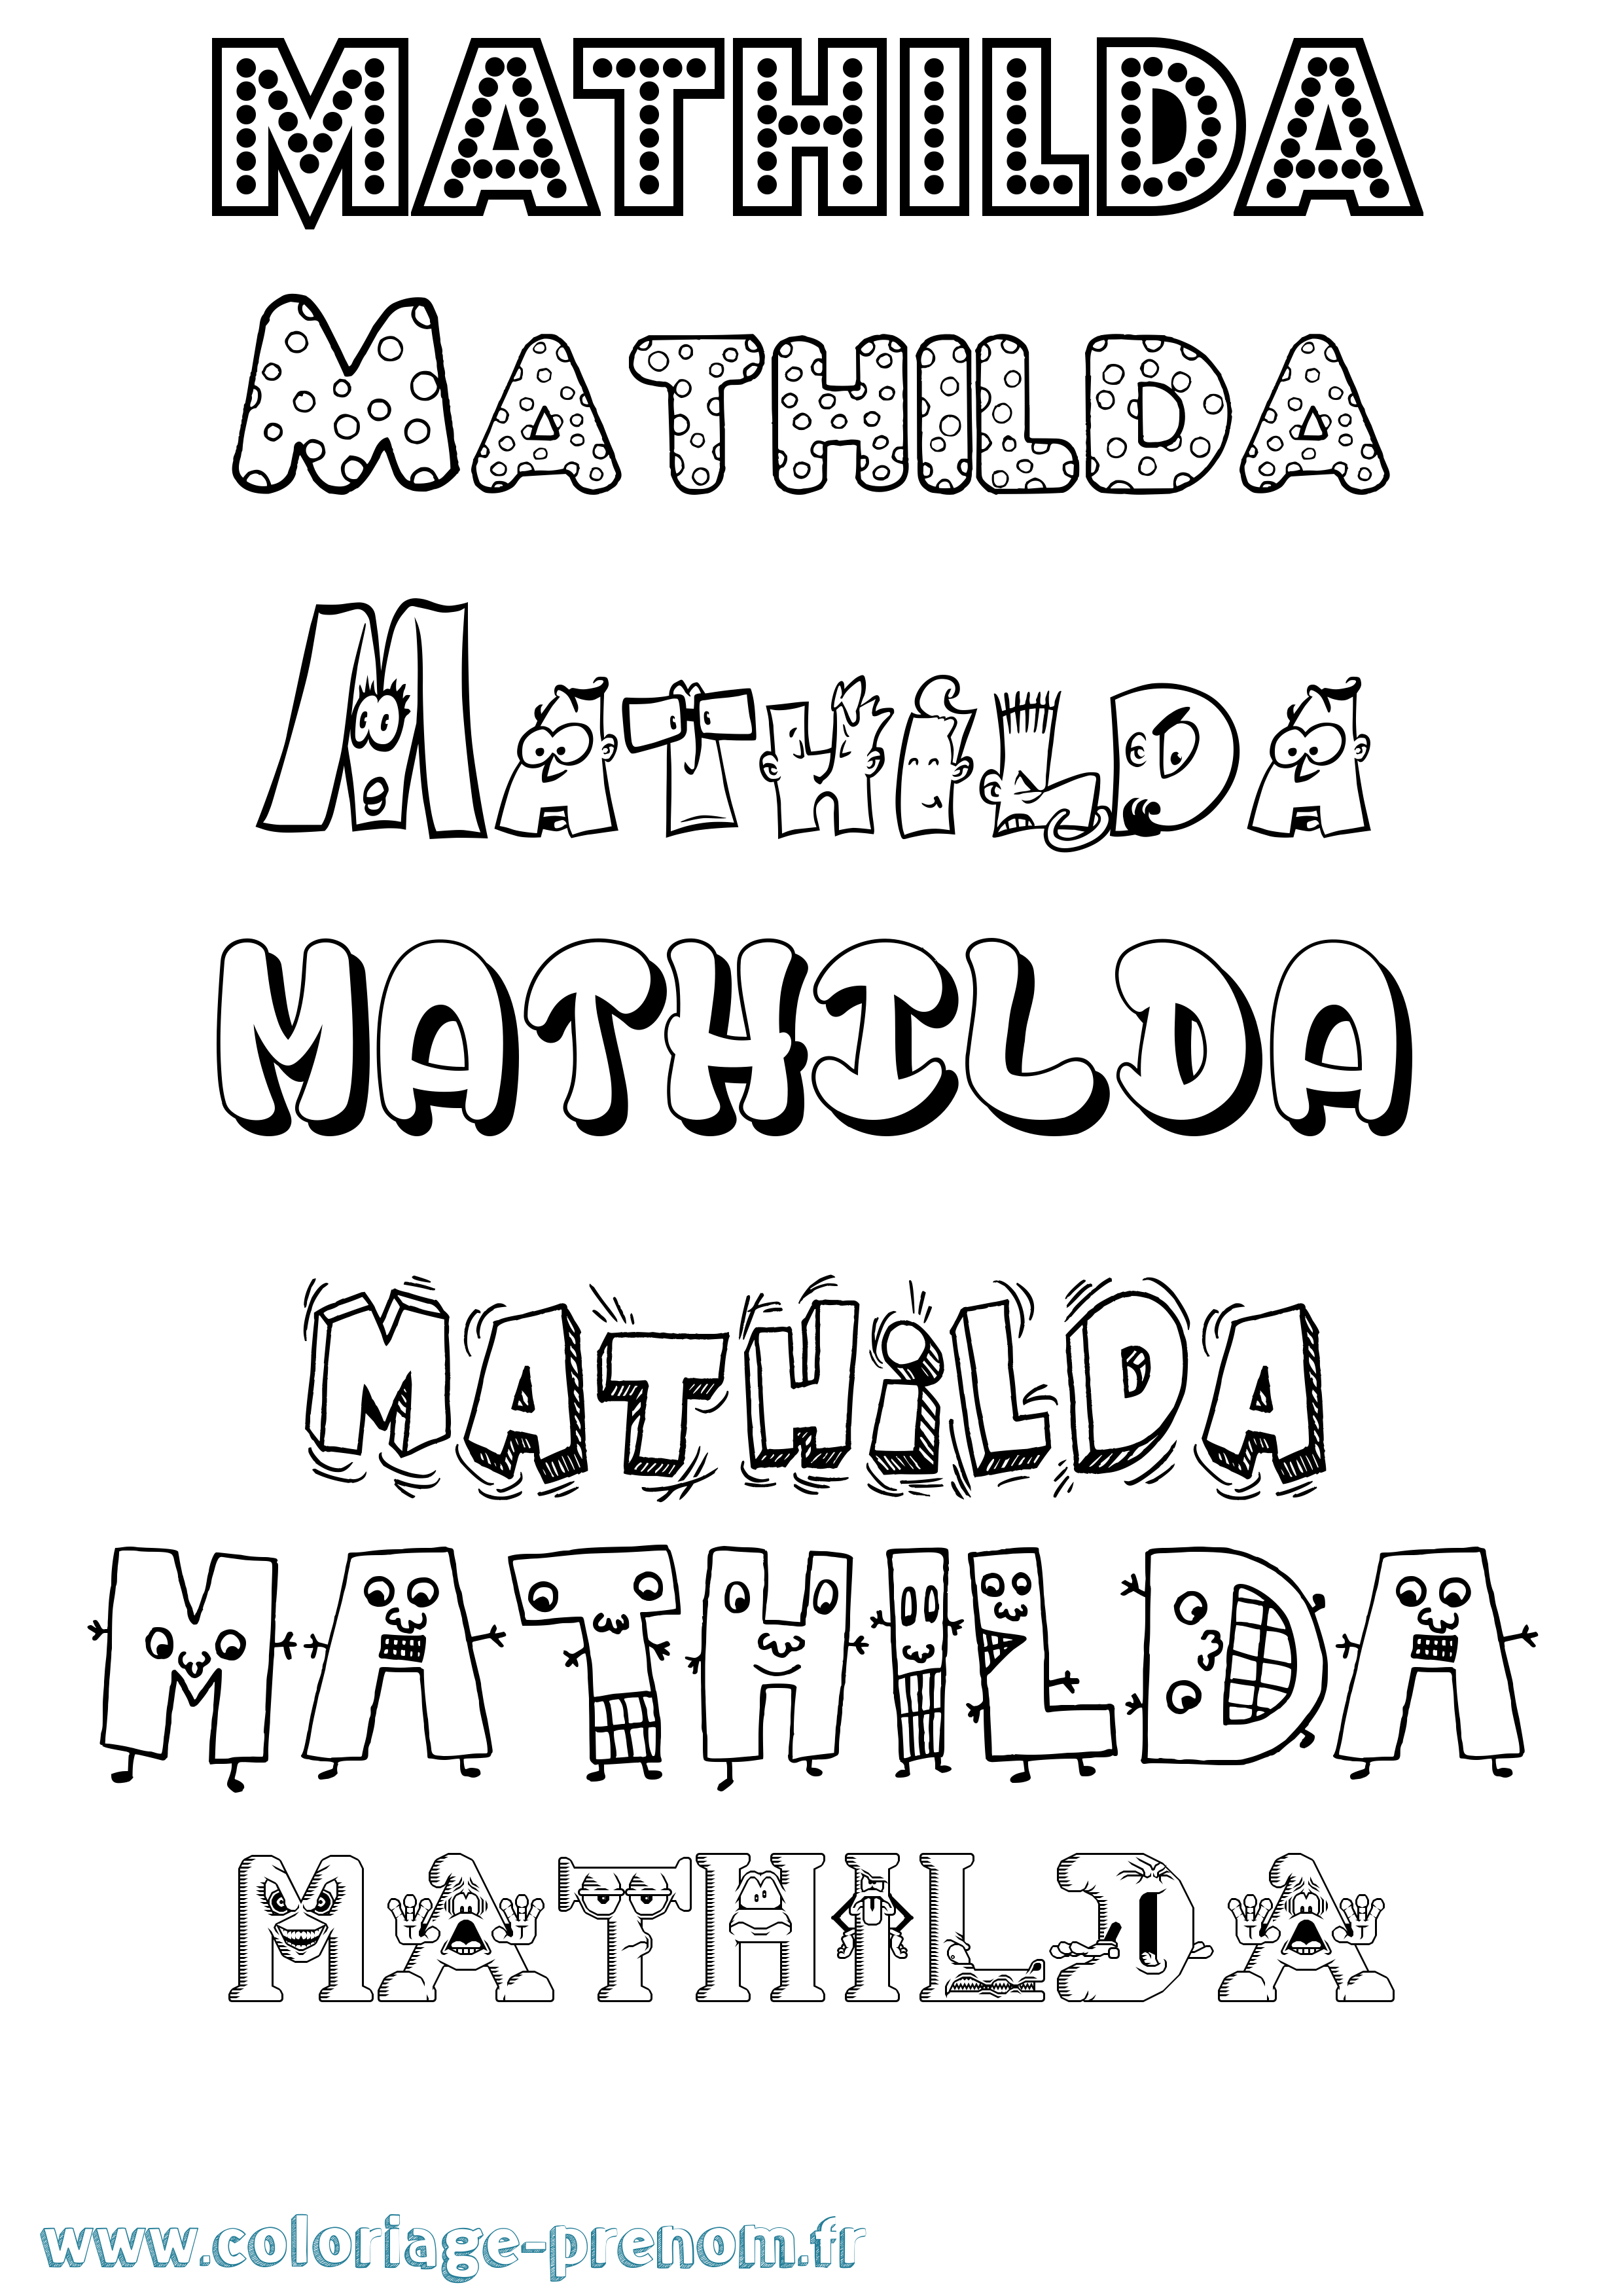 Coloriage prénom Mathilda Fun